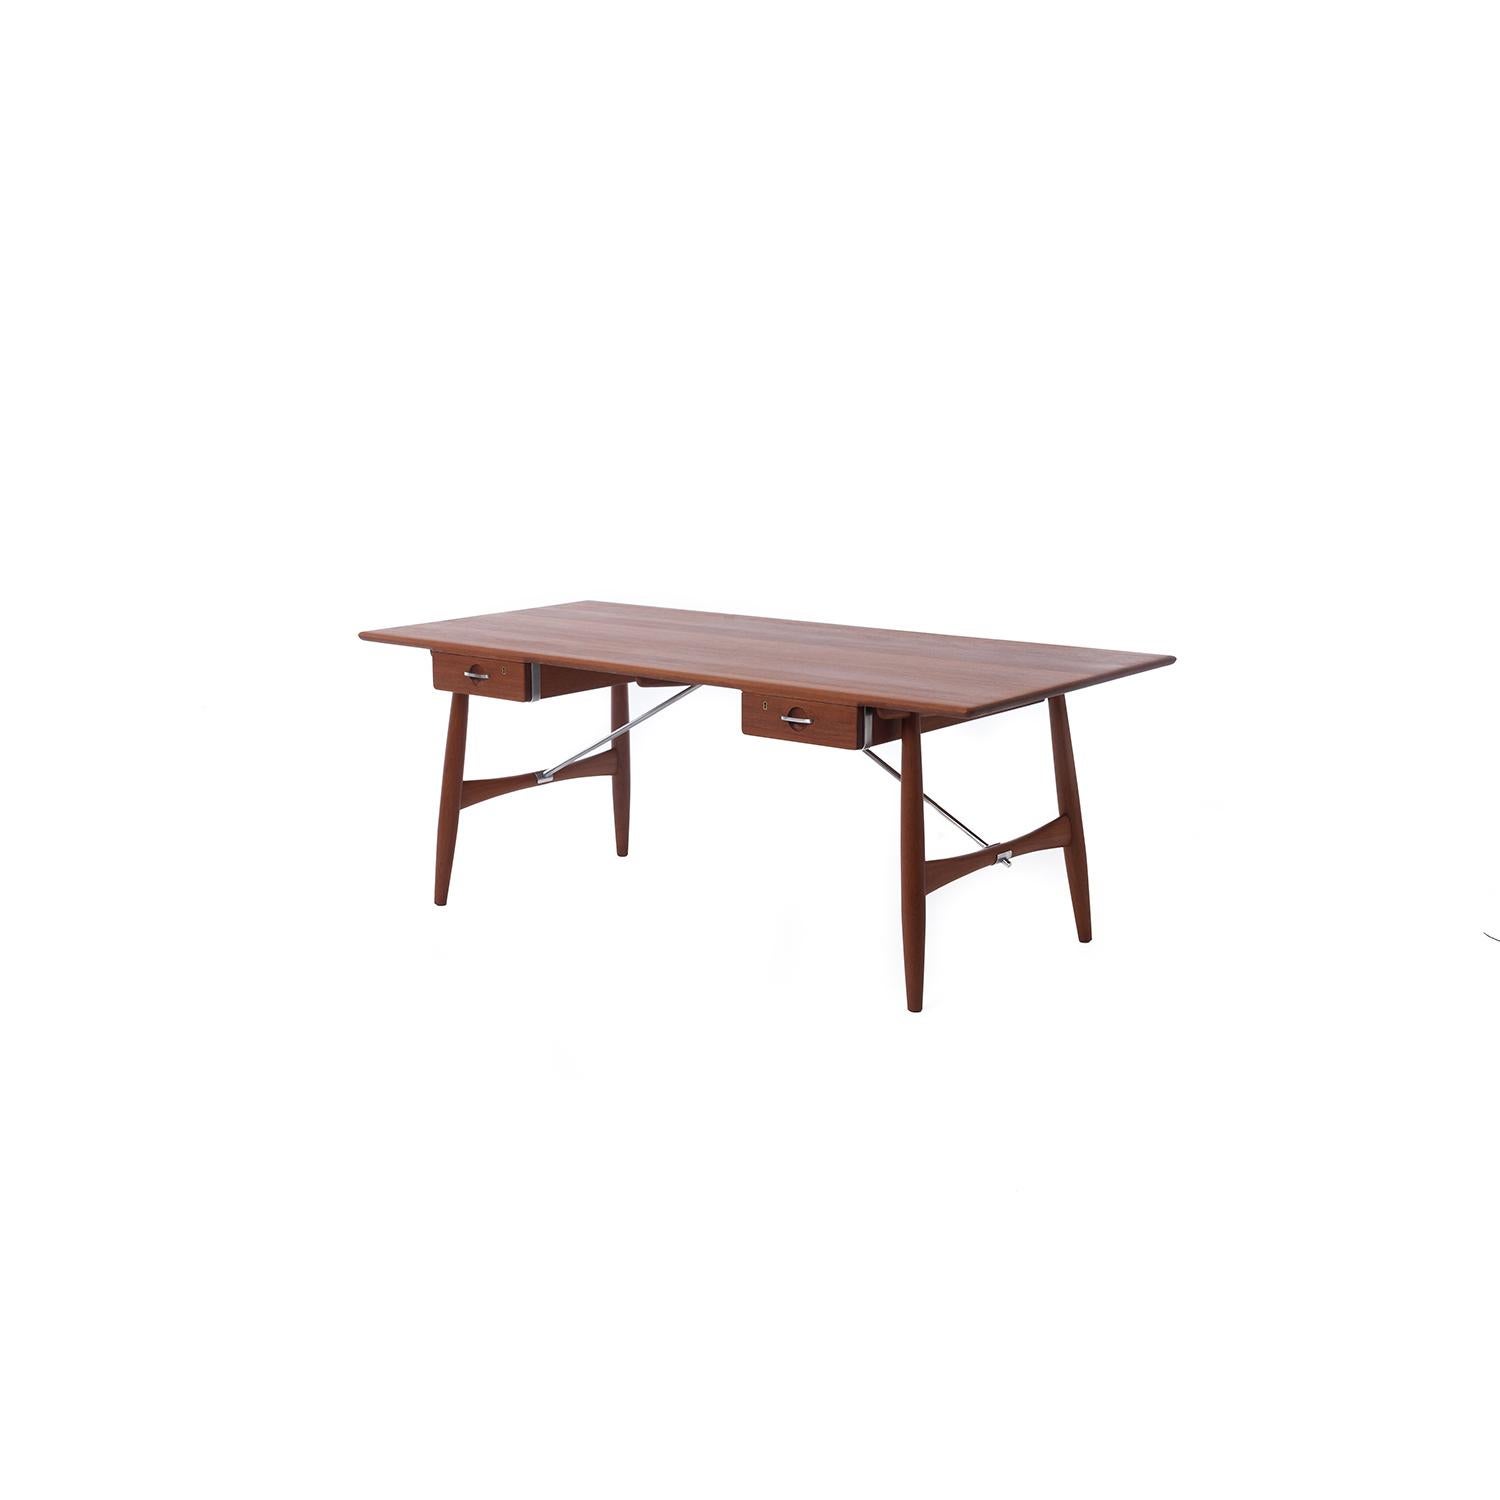 Danish Hans J Wegner Solid Teak Architect's Desk Model 571 For Sale